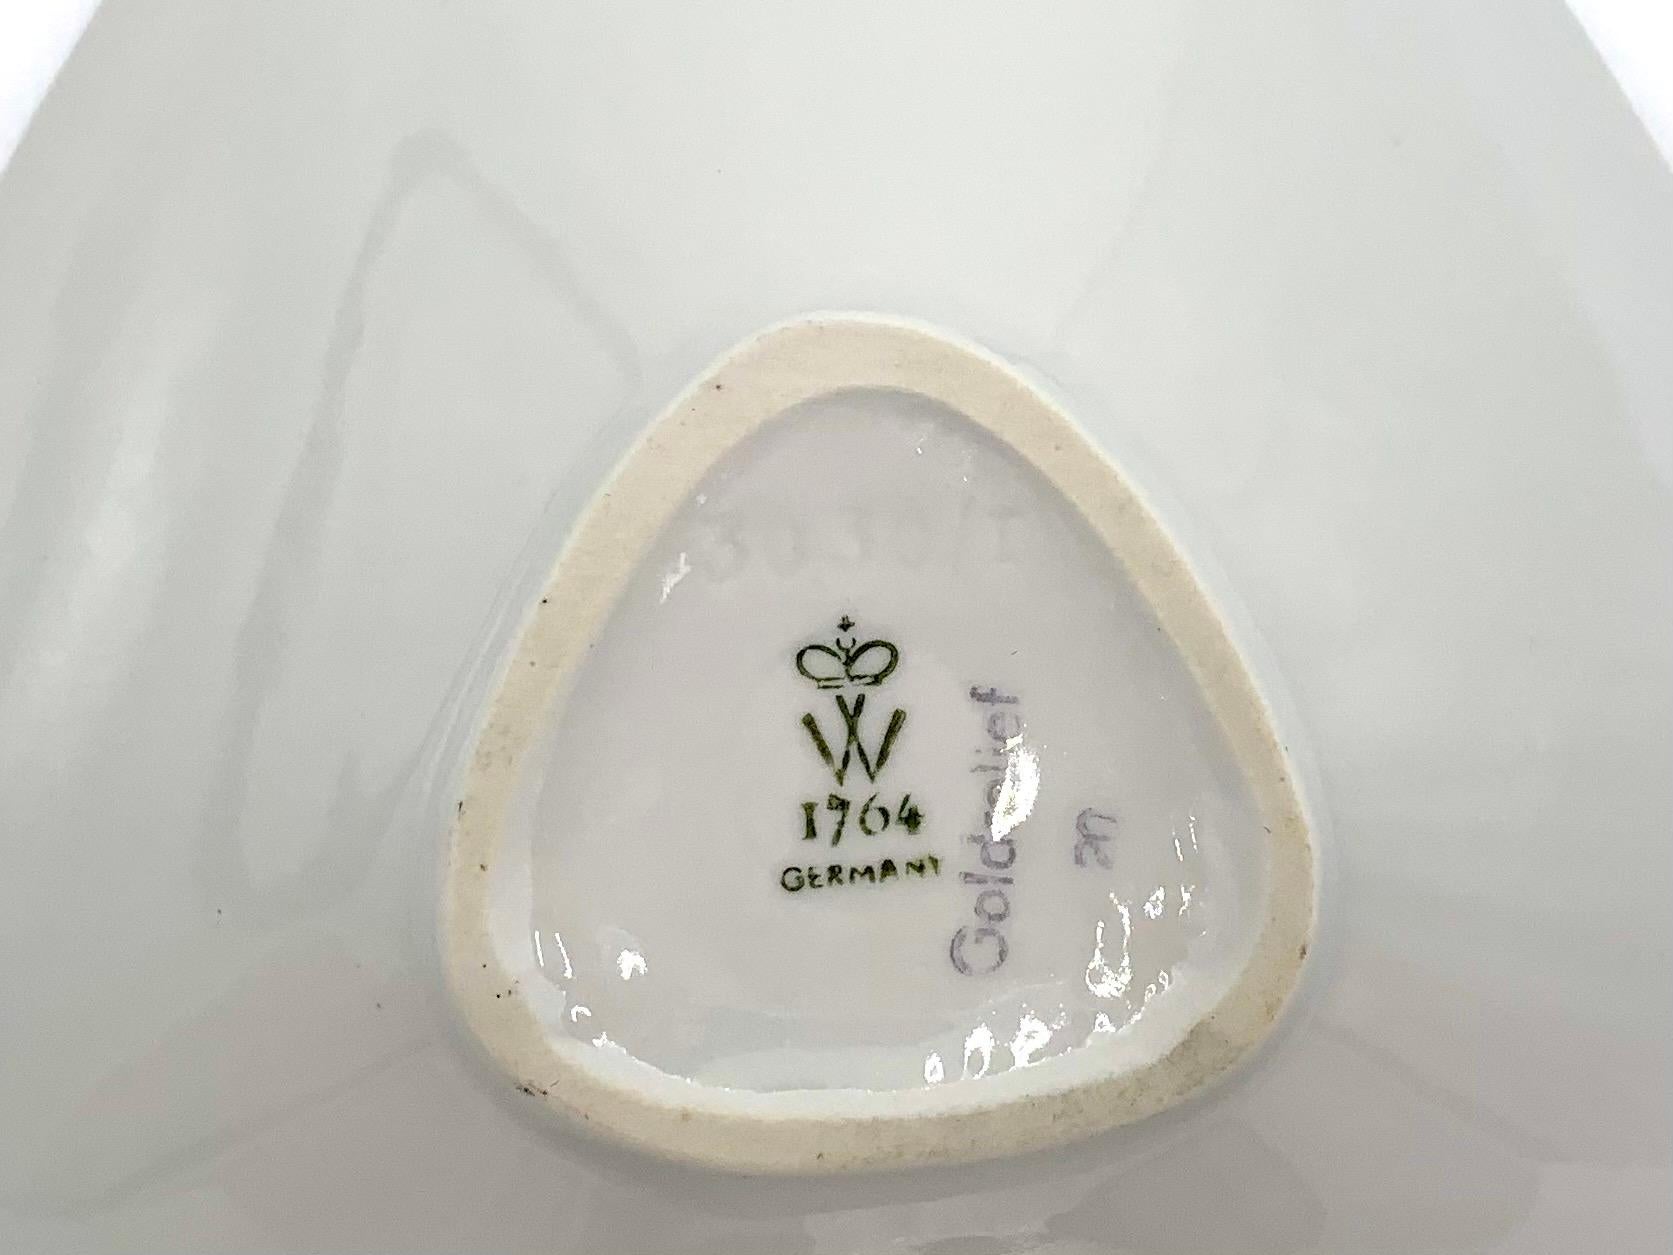 wallendorf porcelain marks